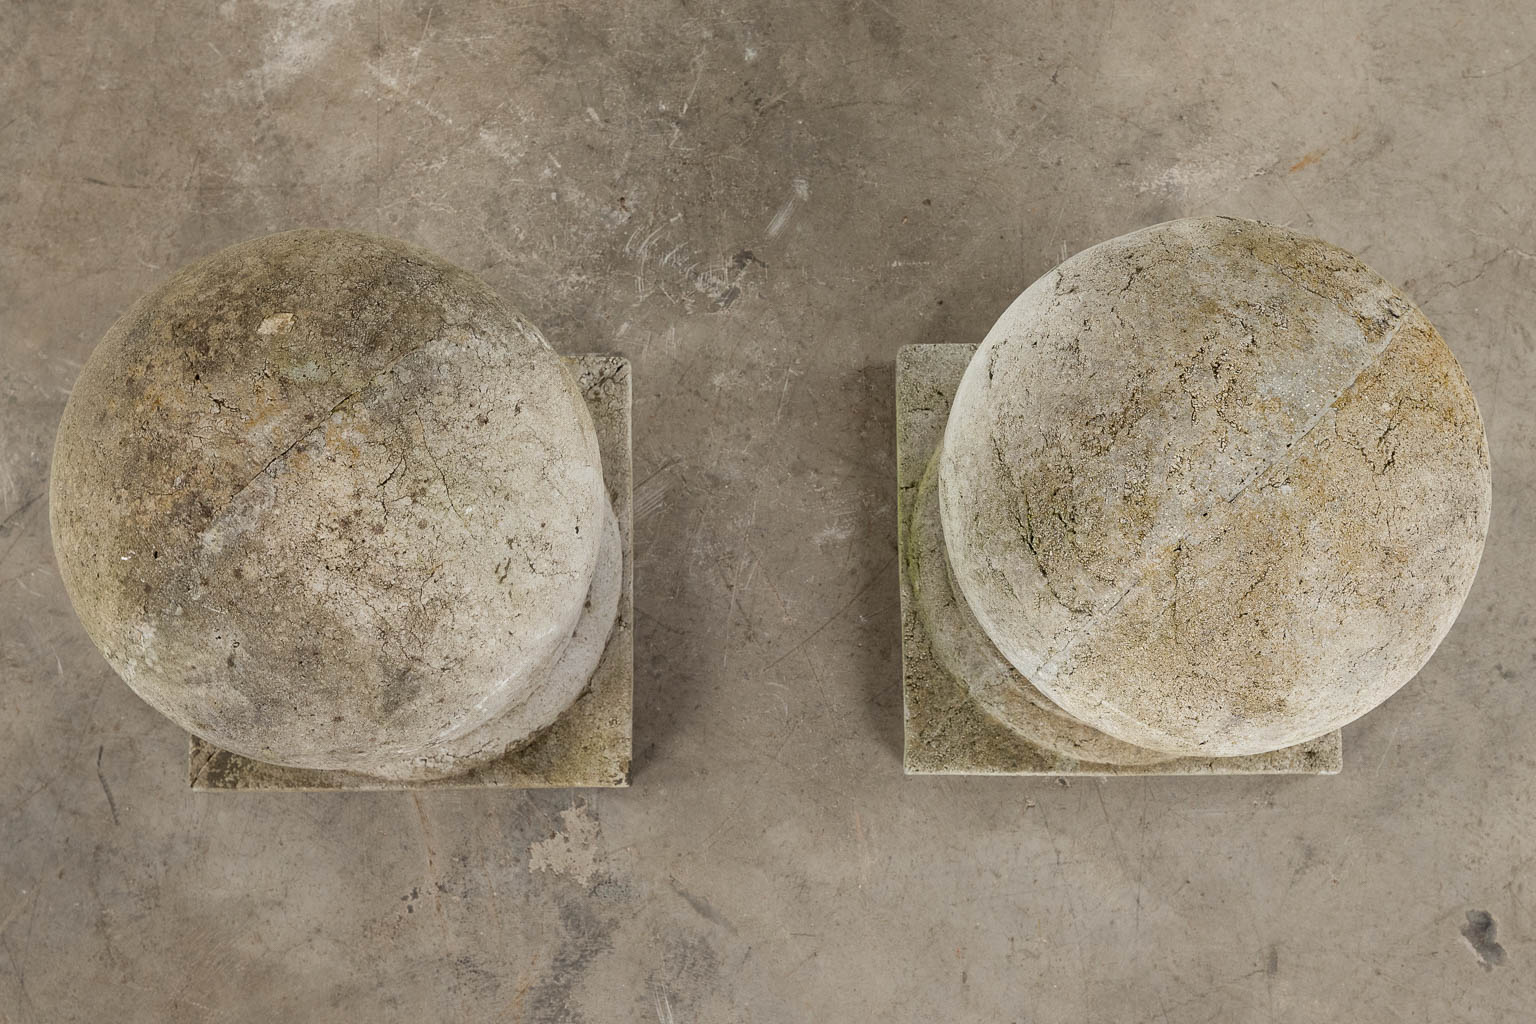 A pair of pillar finials, or pillar caps. 20th C. (D:30 x W:30 x H:45 cm)